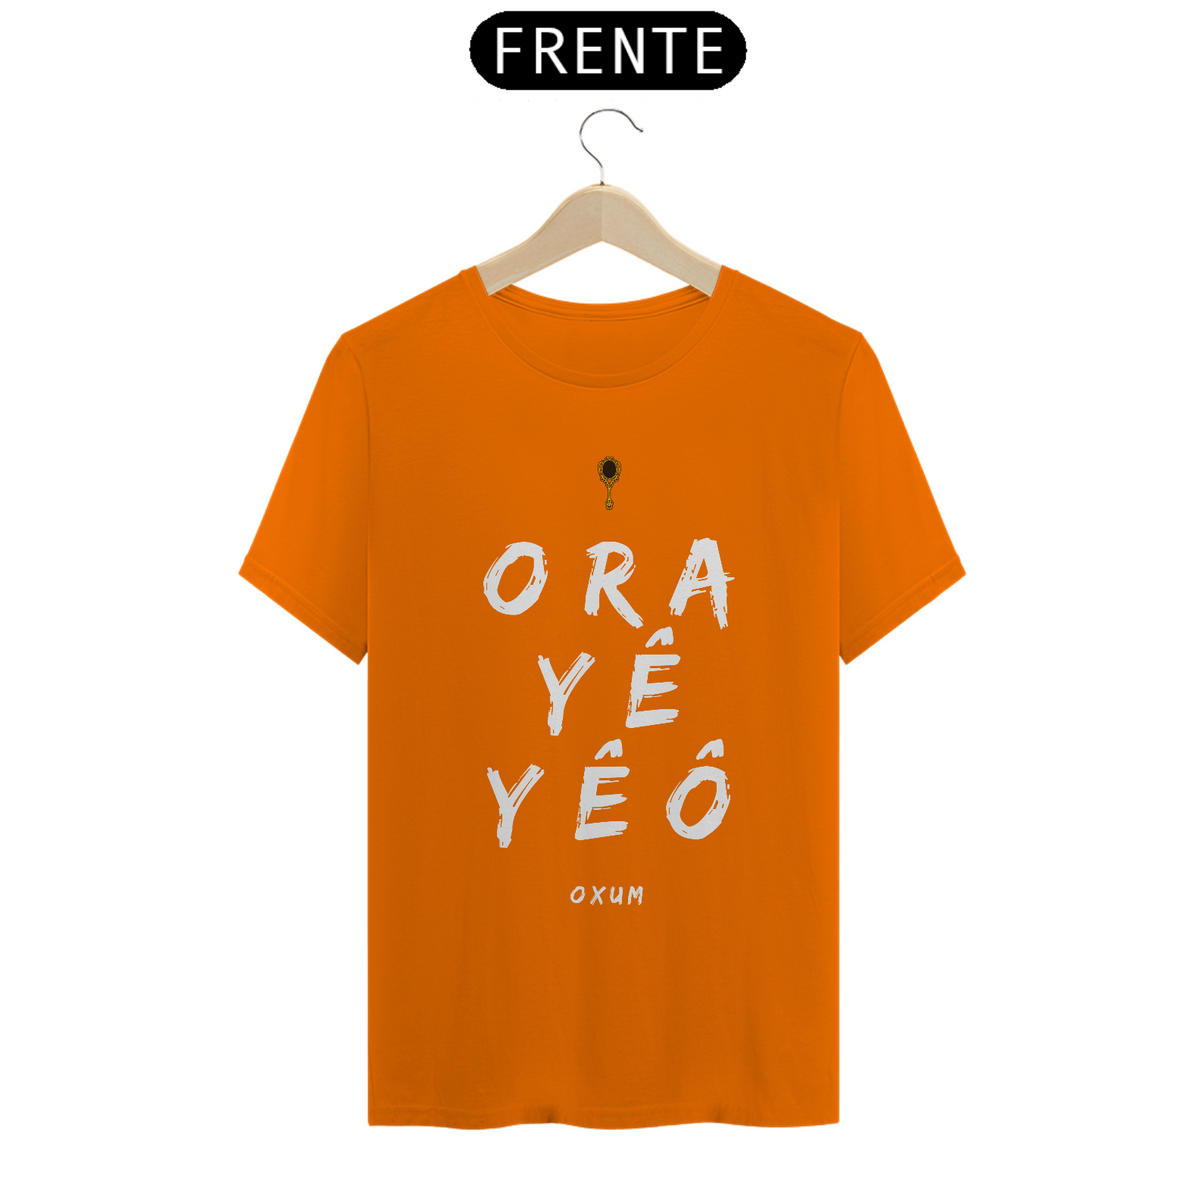 Nome do produto: Camiseta Masculina Osun Oxum - Saudação Òóré Yéyé Osun 100% Algodão Fio 24.1, 145g costura simples e gola ribana